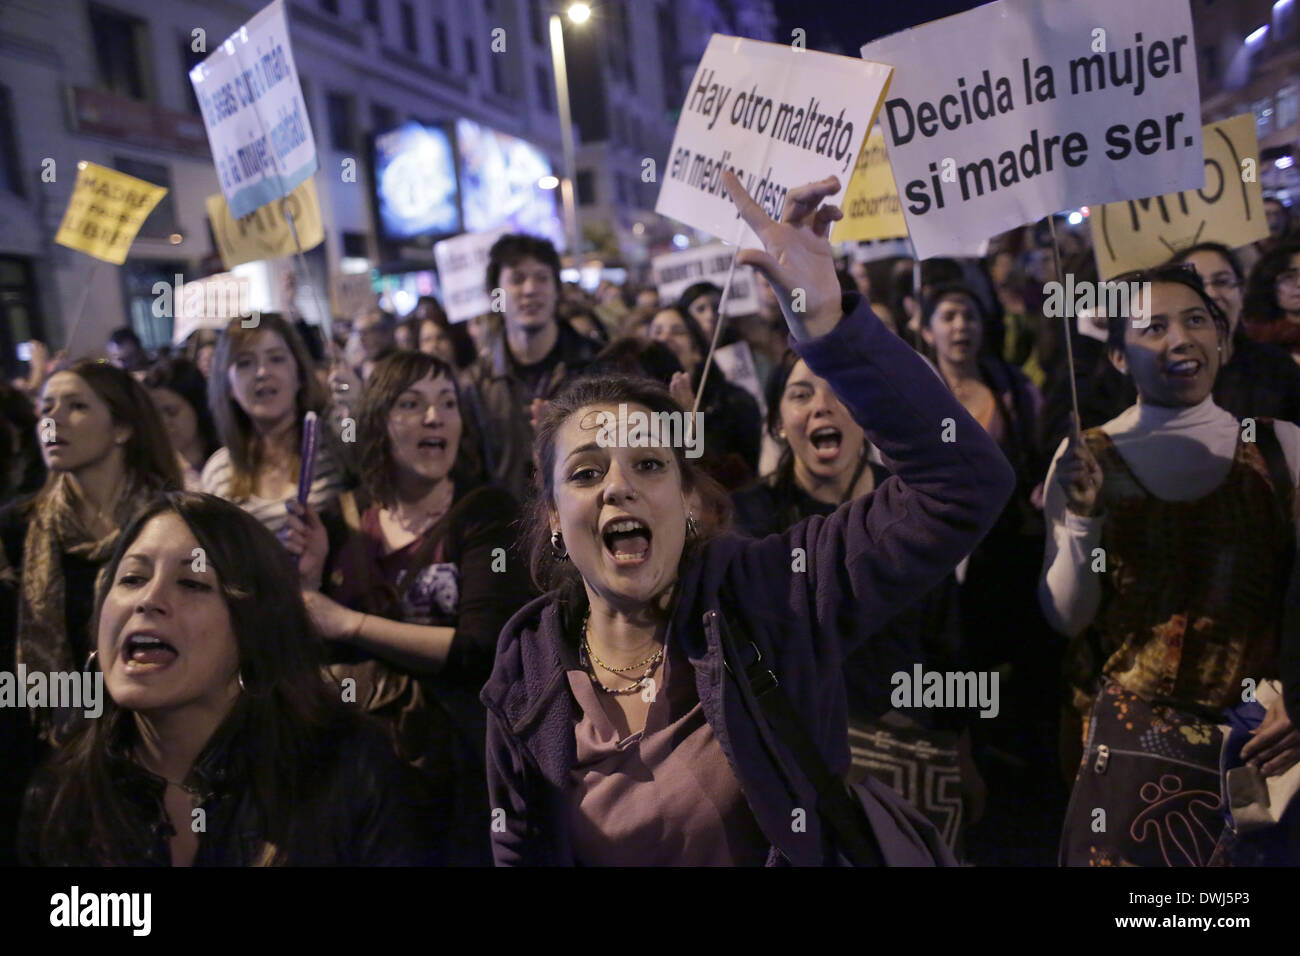 Madrid, Espagne. Mar 8, 2014. Les manifestants crier des slogans au cours d'une manifestation contre le gouvernement espagnol envisage de mettre en œuvre d'importantes restrictions à l'avortement à Madrid, en Espagne, en mars, le samedi, 8e, 2014. La réforme de la loi sur l'avortement et la violence de genre ont conduit les manifestations massives qui a eu lieu dans une douzaine de villes en Espagne pour marquer la Journée internationale de la femme, les femmes de gestion collective ont également dénoncé la forte différence de rémunération entre les hommes et les femmes et l'élimination des droits sociaux. © Rodrigo Garcia/NurPhoto ZUMAPRESS.com/Alamy/Live News Banque D'Images